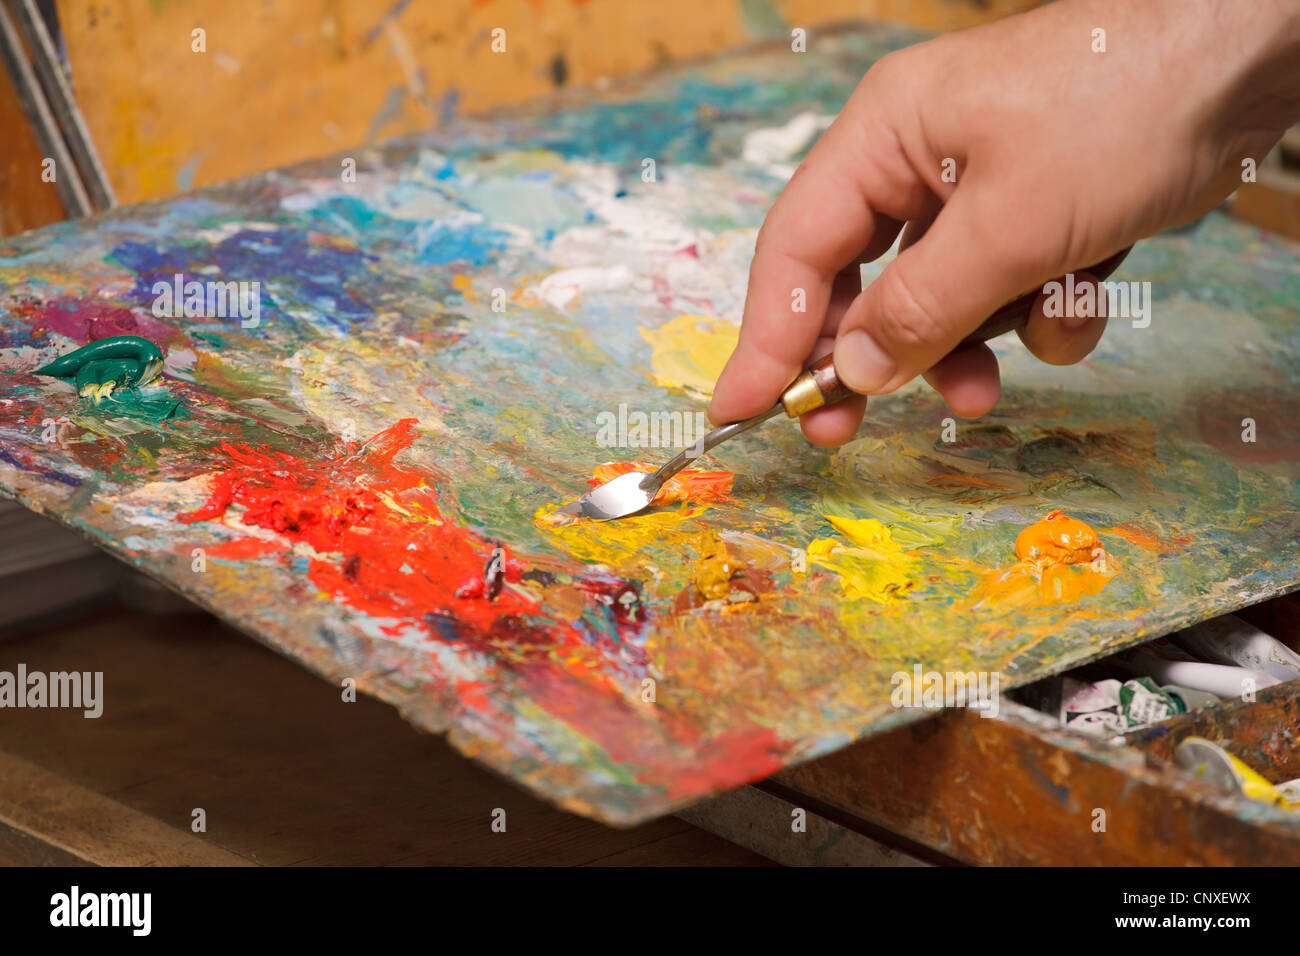 Les mix de l'artiste peint à l'huile avec une spatule.images horizontales, close-up. Banque D'Images